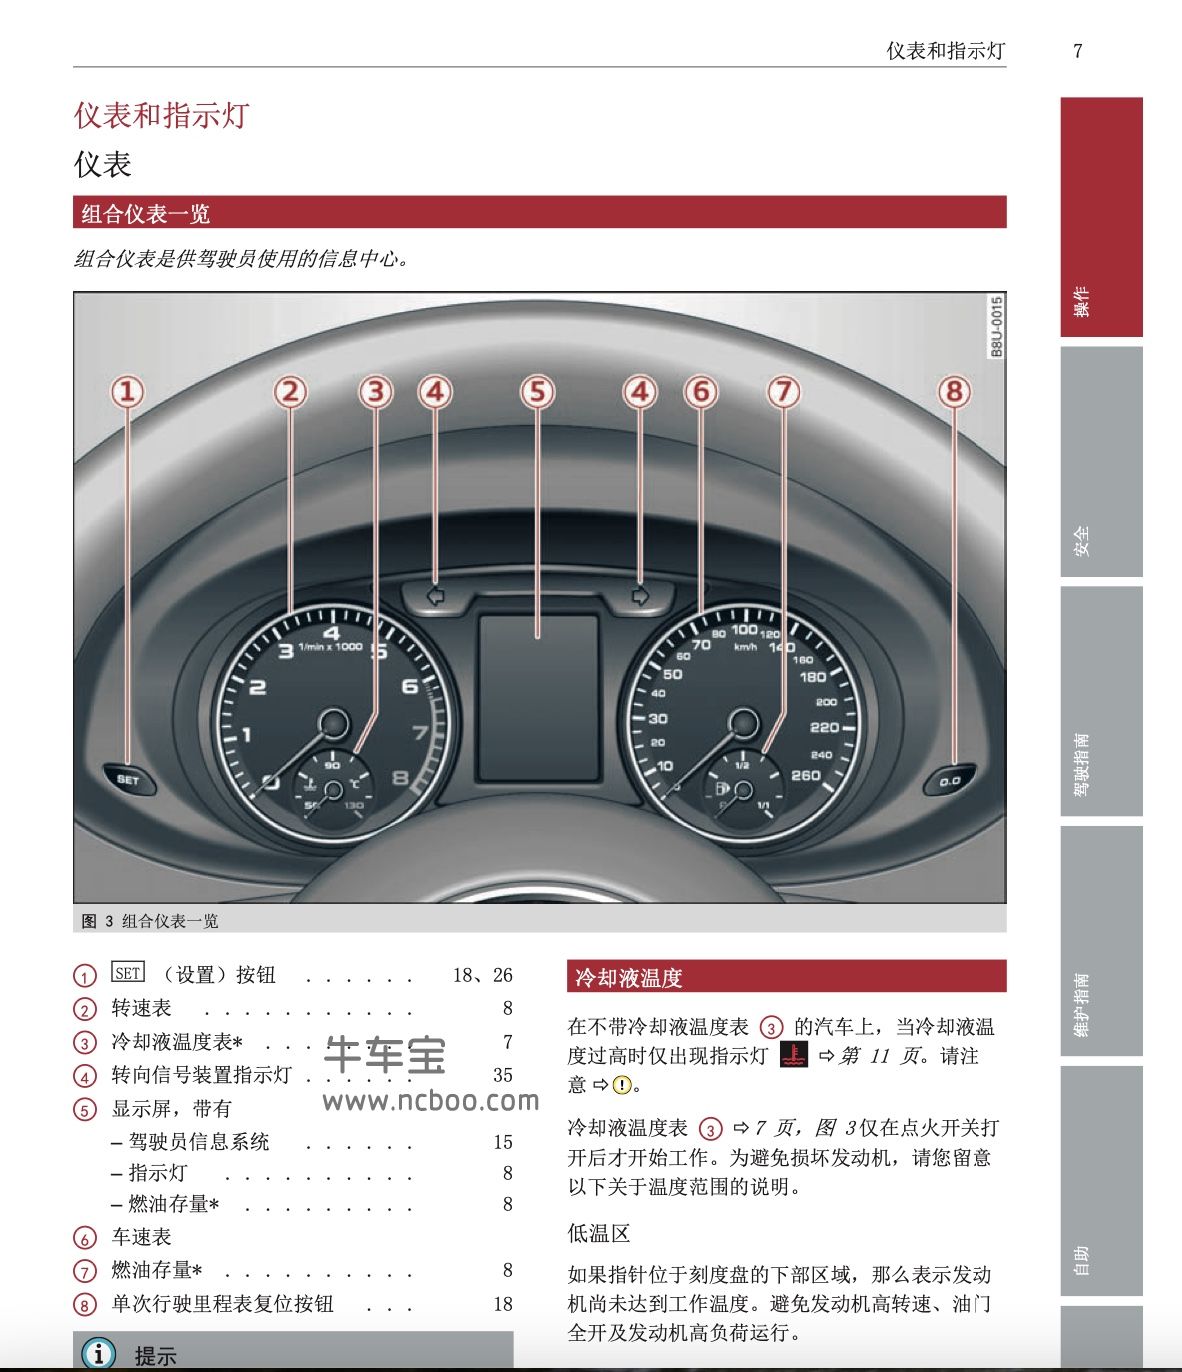 2013款进口奥迪Q3产品使用说明书用户手册pdf电子版下载